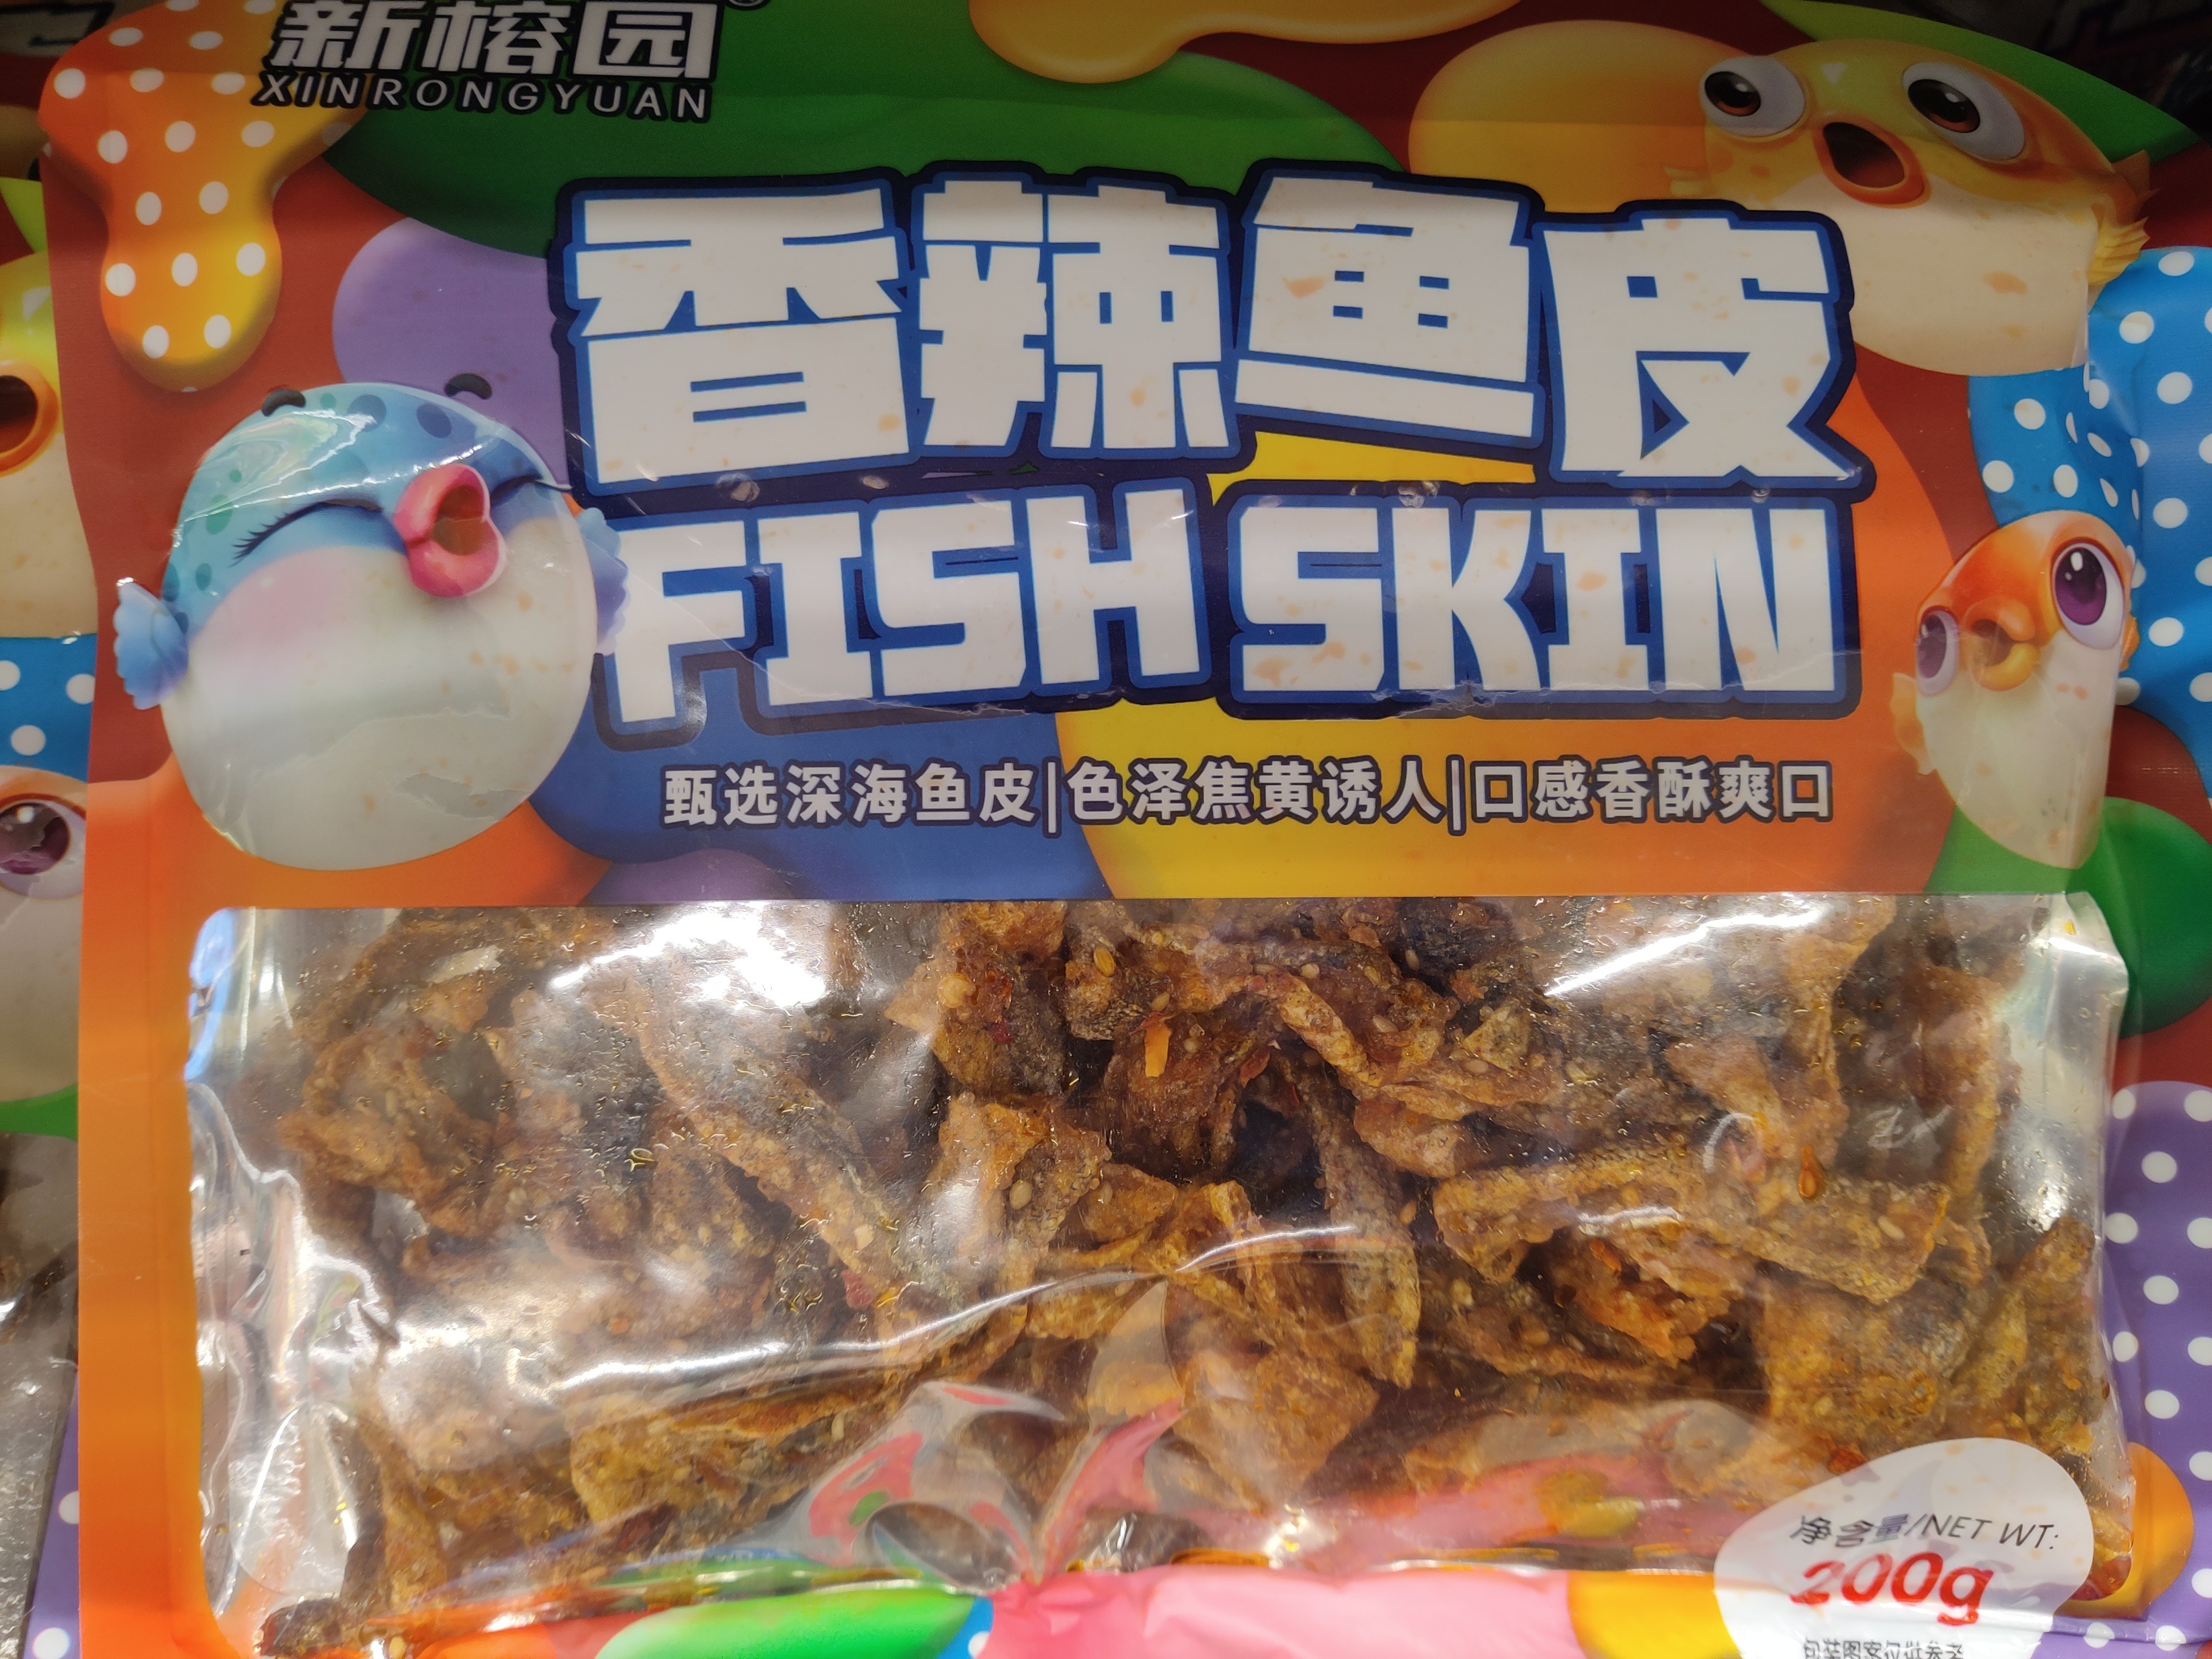 fish-skin-spicy-flavor